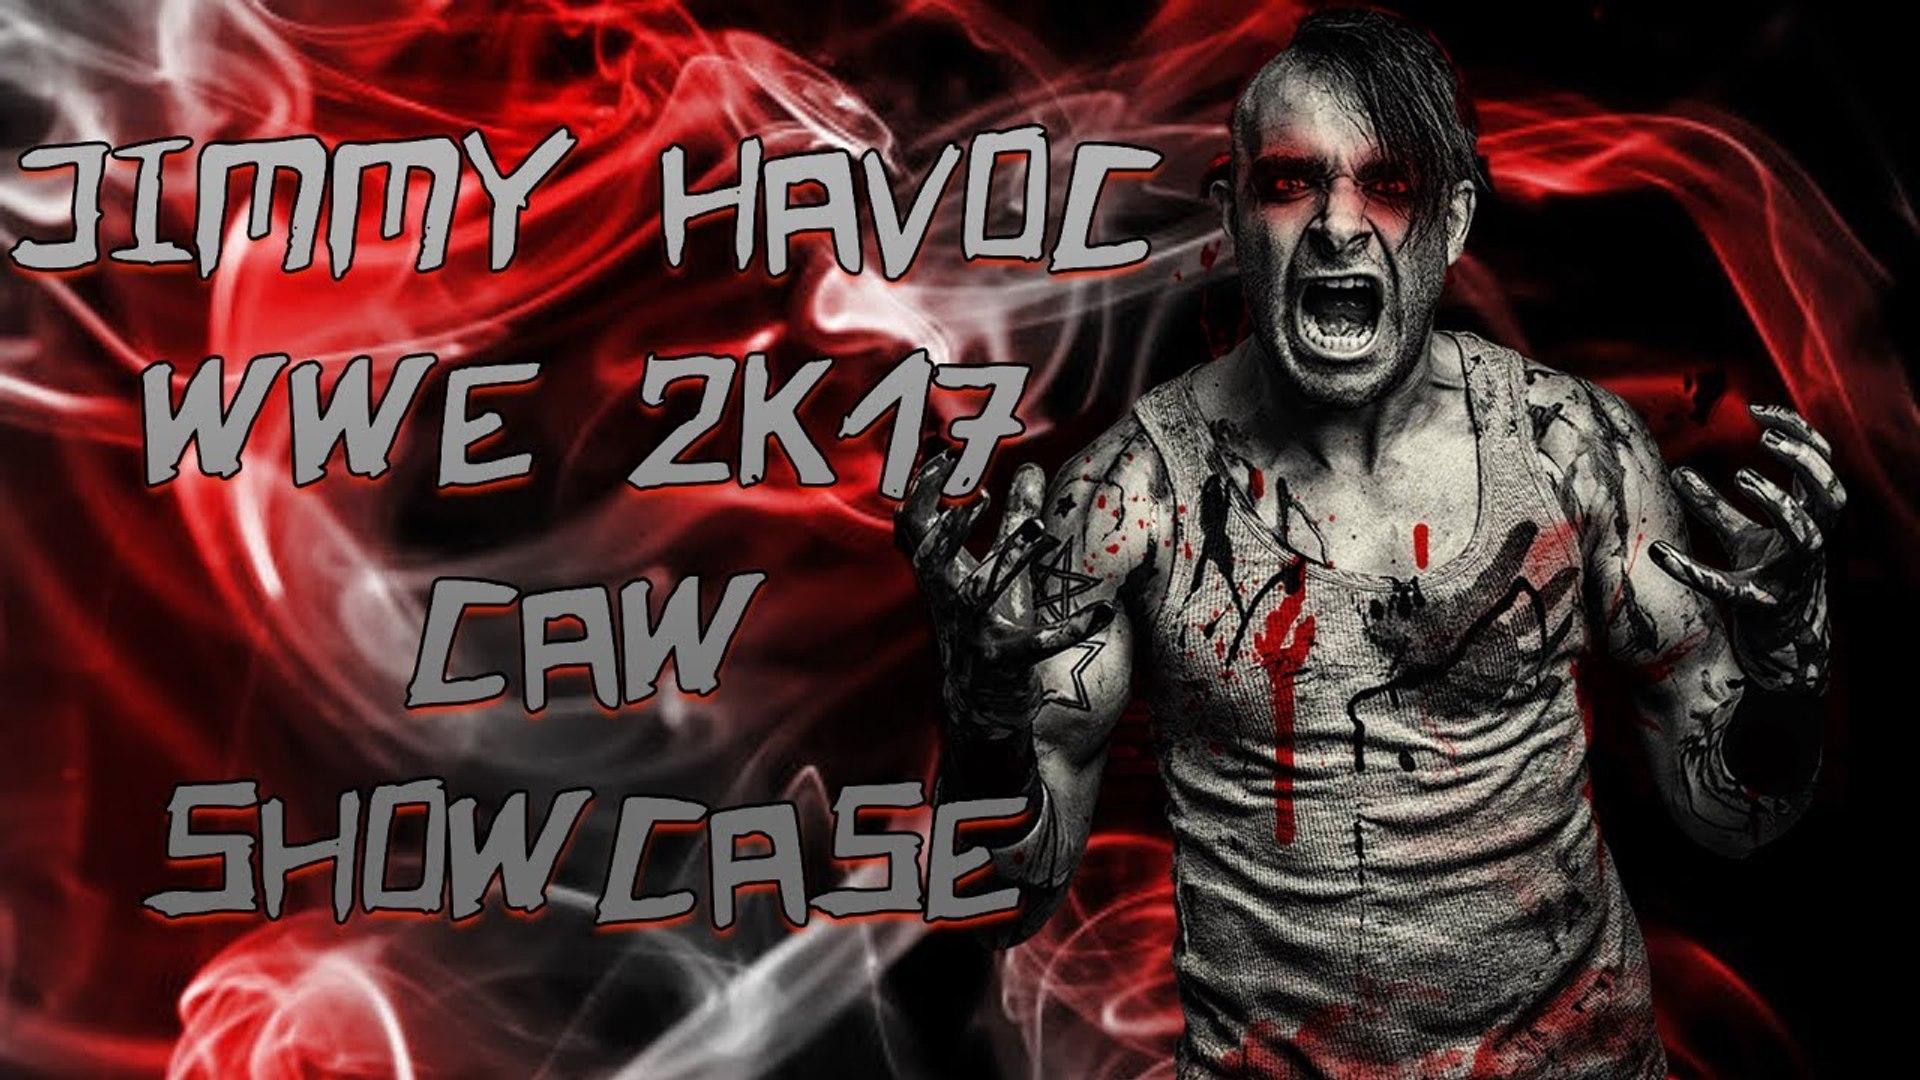 Jimmy Havoc 2K17 CAW Showcase